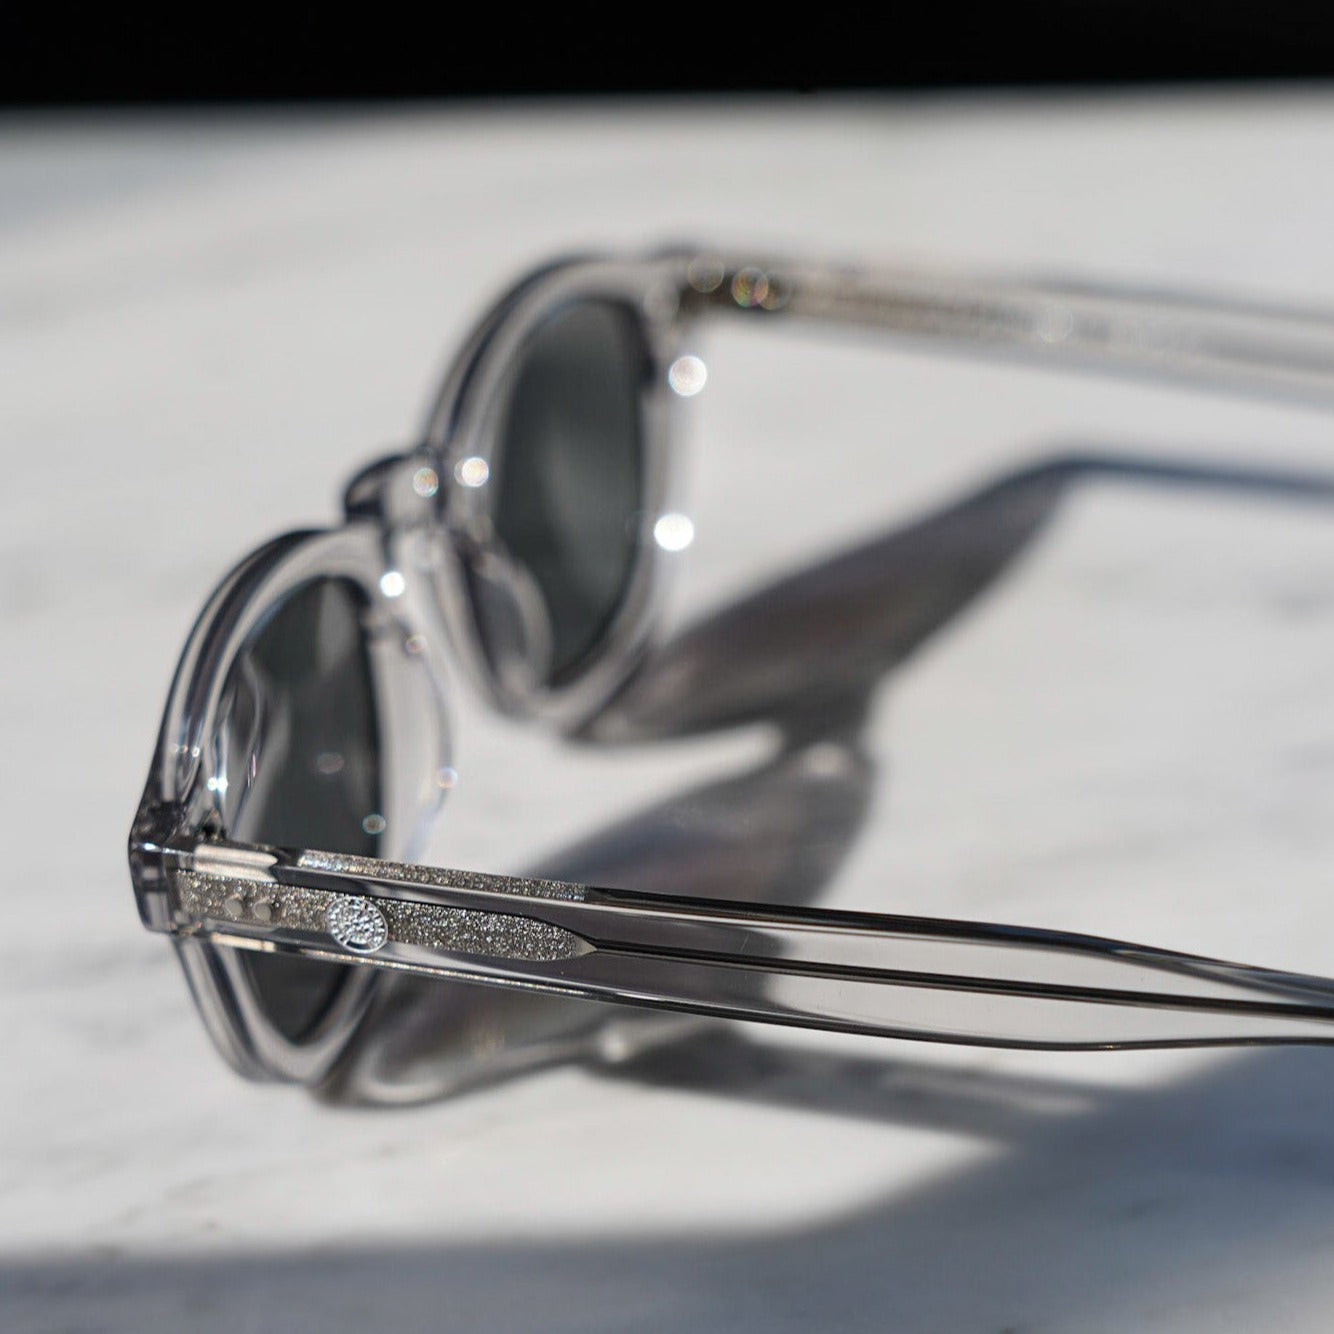 Legacy solbriller - Transparent grå